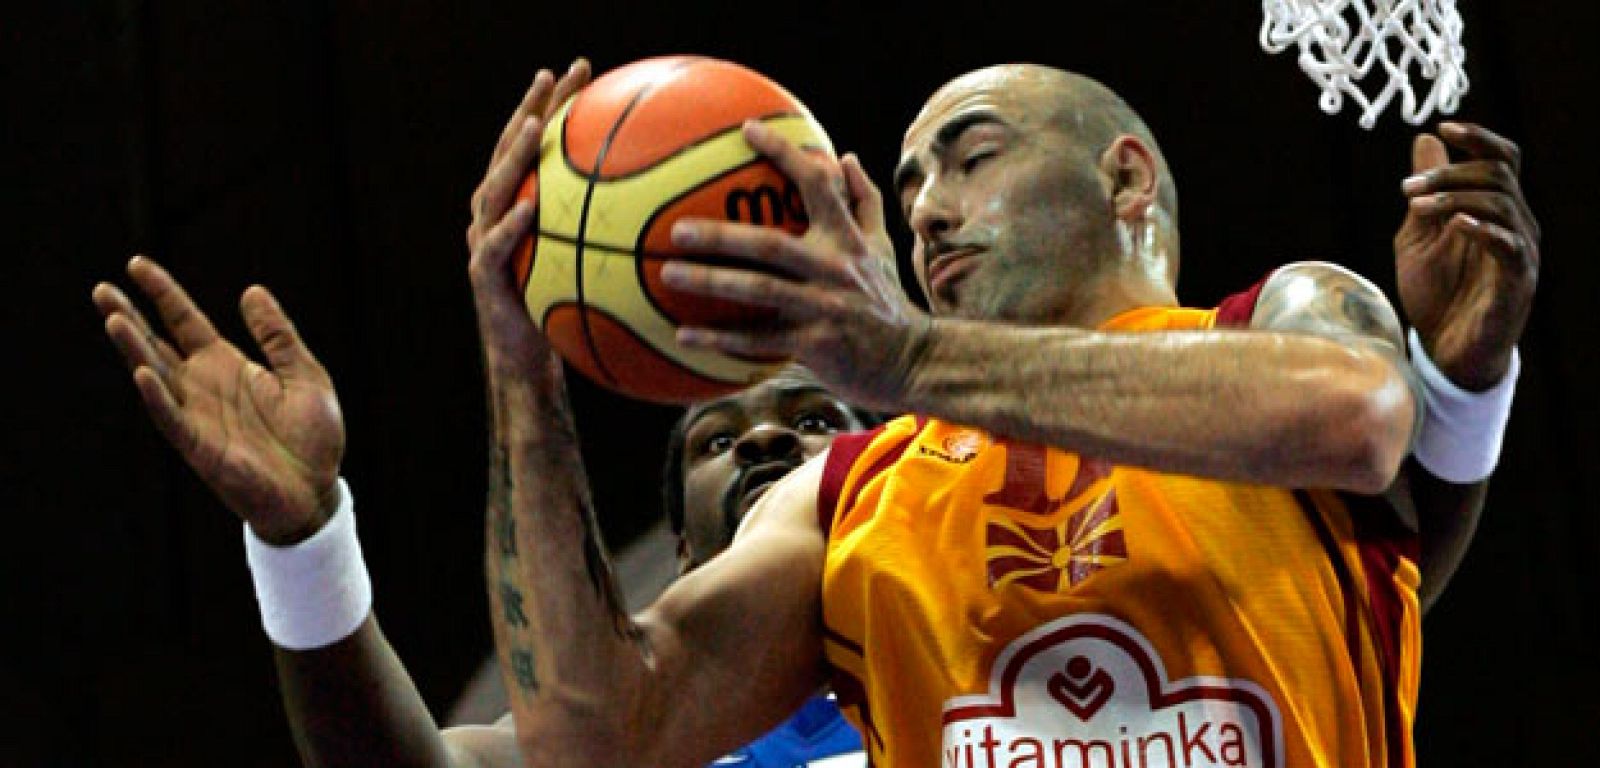 Grecia comienza asustando en su primer partido del Eurobasket.